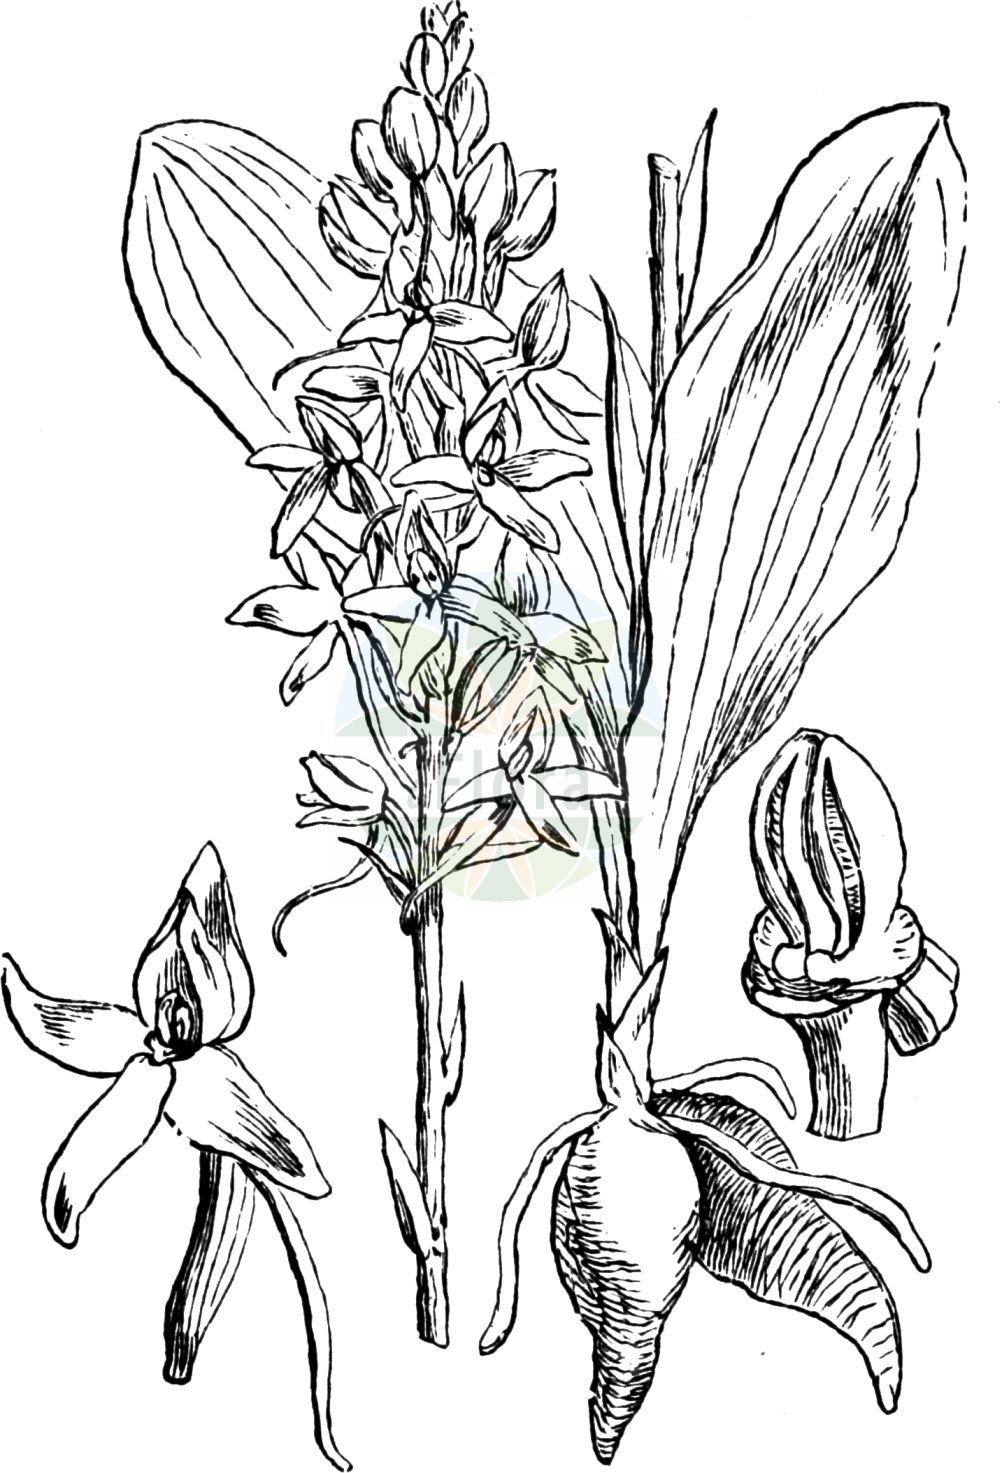 Historische Abbildung von Platanthera bifolia (Weiße Waldhyazinthe - Lesser Butterfly-orchid). Das Bild zeigt Blatt, Bluete, Frucht und Same. ---- Historical Drawing of Platanthera bifolia (Weiße Waldhyazinthe - Lesser Butterfly-orchid). The image is showing leaf, flower, fruit and seed.(Platanthera bifolia,Weiße Waldhyazinthe,Lesser Butterfly-orchid,Gymnadenia bifolia,Habenaria bifolia,Lysias bifolia,Orchis bifolia,Platanthera bifolia,Satyrium bifolium,Sieberia bifolia,Weisse Waldhyazinthe,Zweiblaettrige Kuckucksblume,Lesser Butterfly-orchid,Platanthera,Waldhyazinthe,Fringed Orchid,Orchidaceae,Knabenkrautgewächse,Orchid family,Blatt,Bluete,Frucht,Same,leaf,flower,fruit,seed,Fitch et al. (1880))